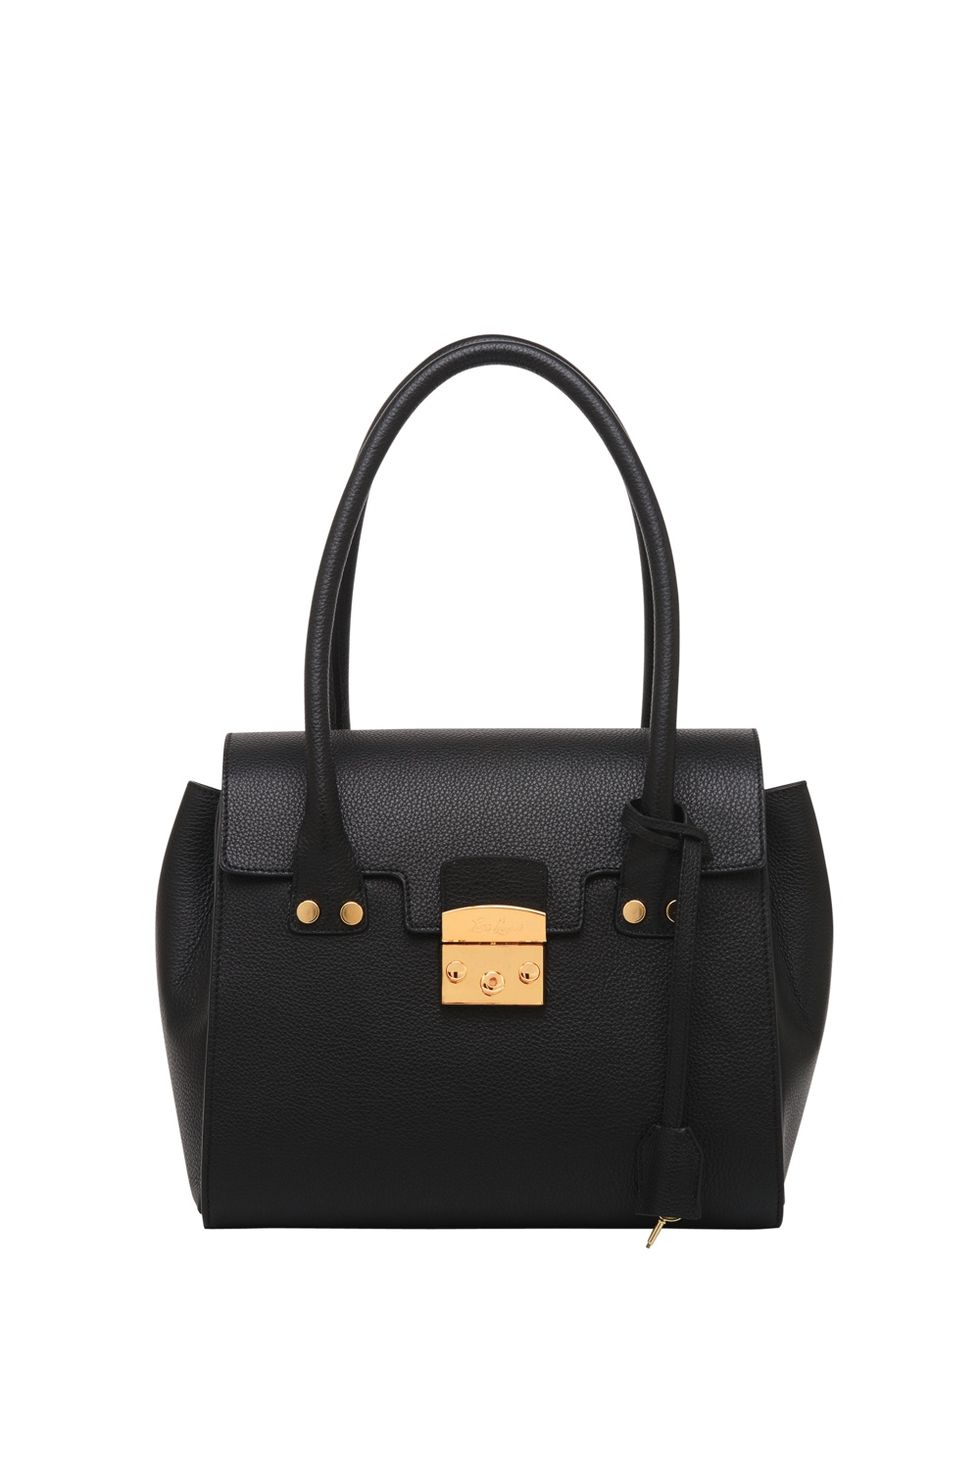 Handbag, Bag, Black, Fashion accessory, Product, Leather, Shoulder bag, Design, Material property, Font, 